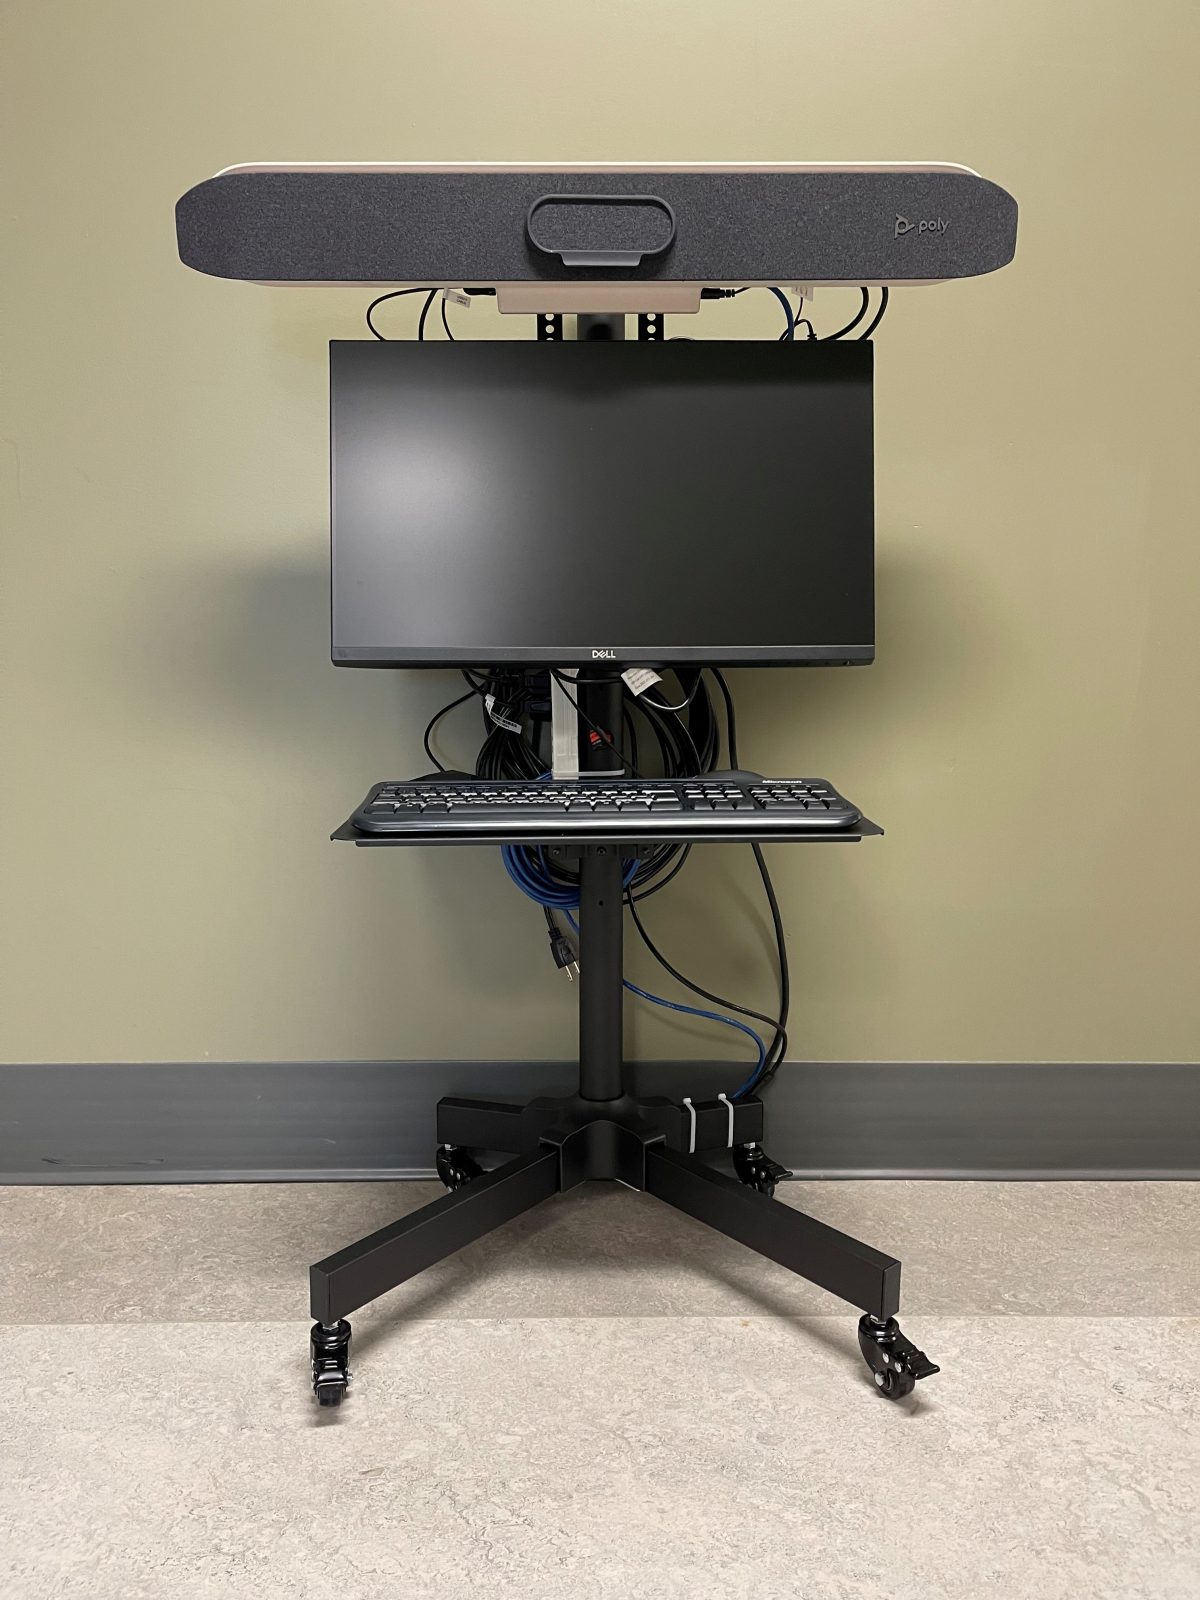 Des systèmes de vidéoconférence sont distribués dans les écoles